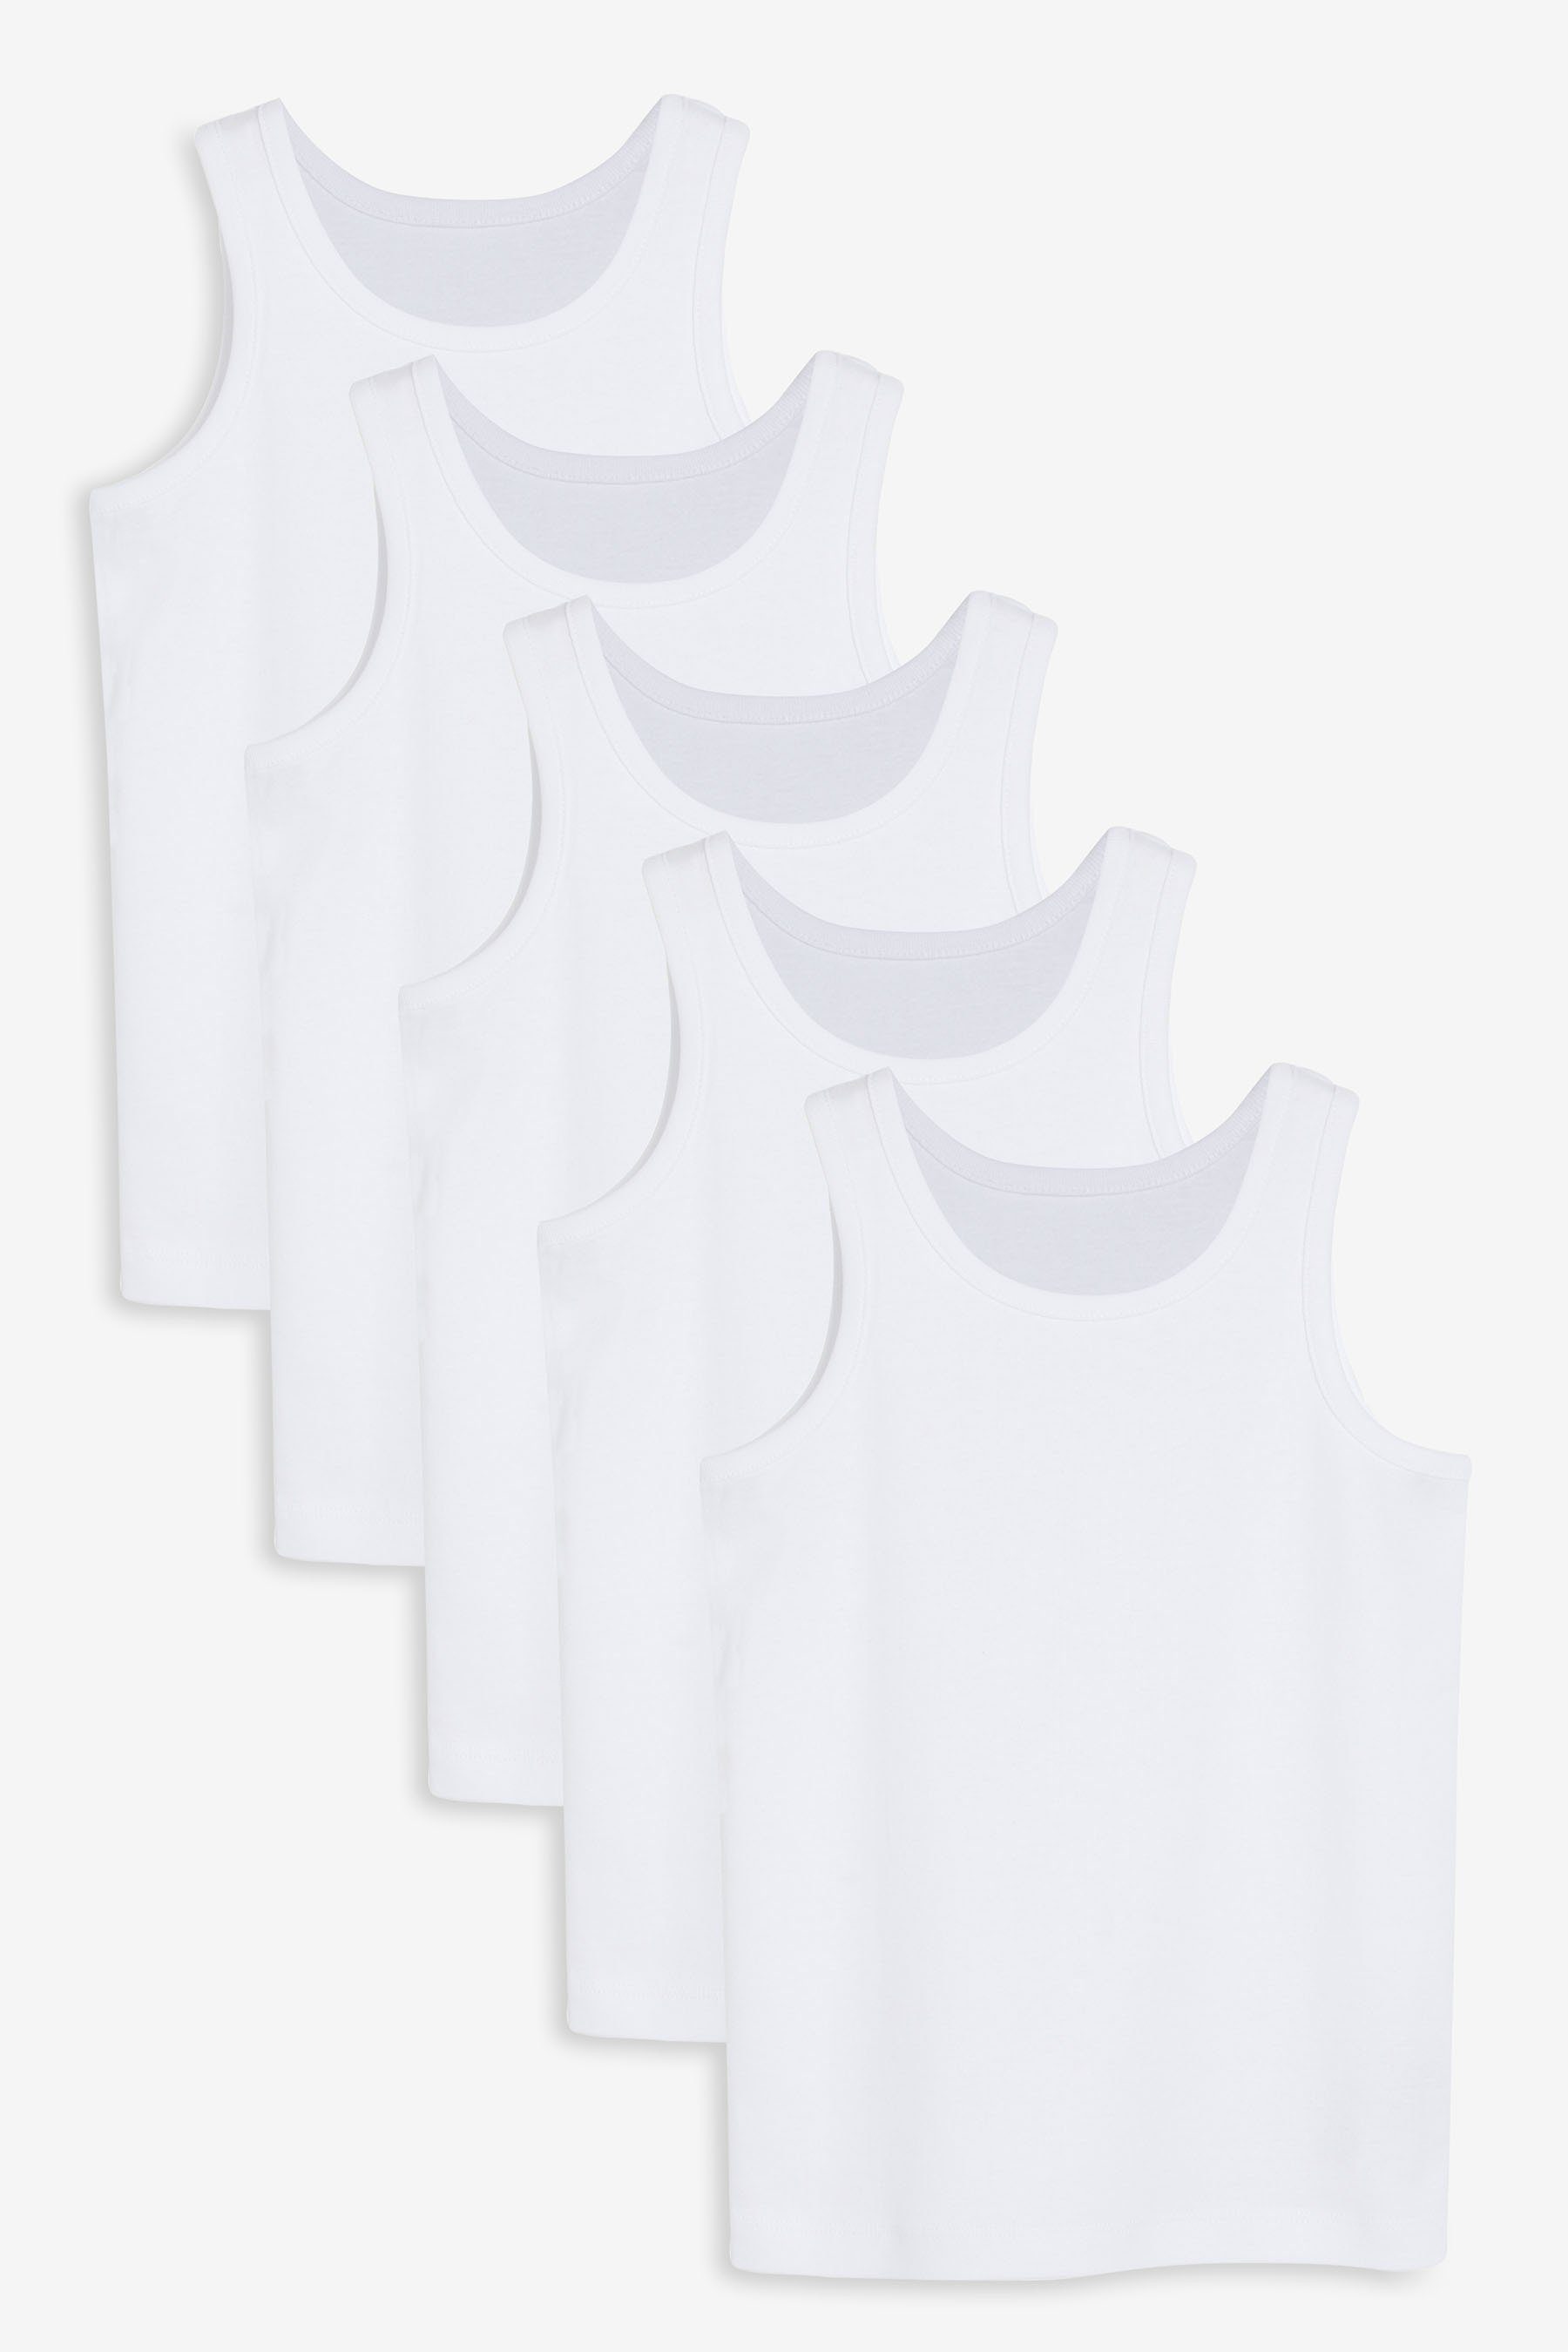 Unterhemd (5-St) White Next aus, 5er-Pack Unterhemden